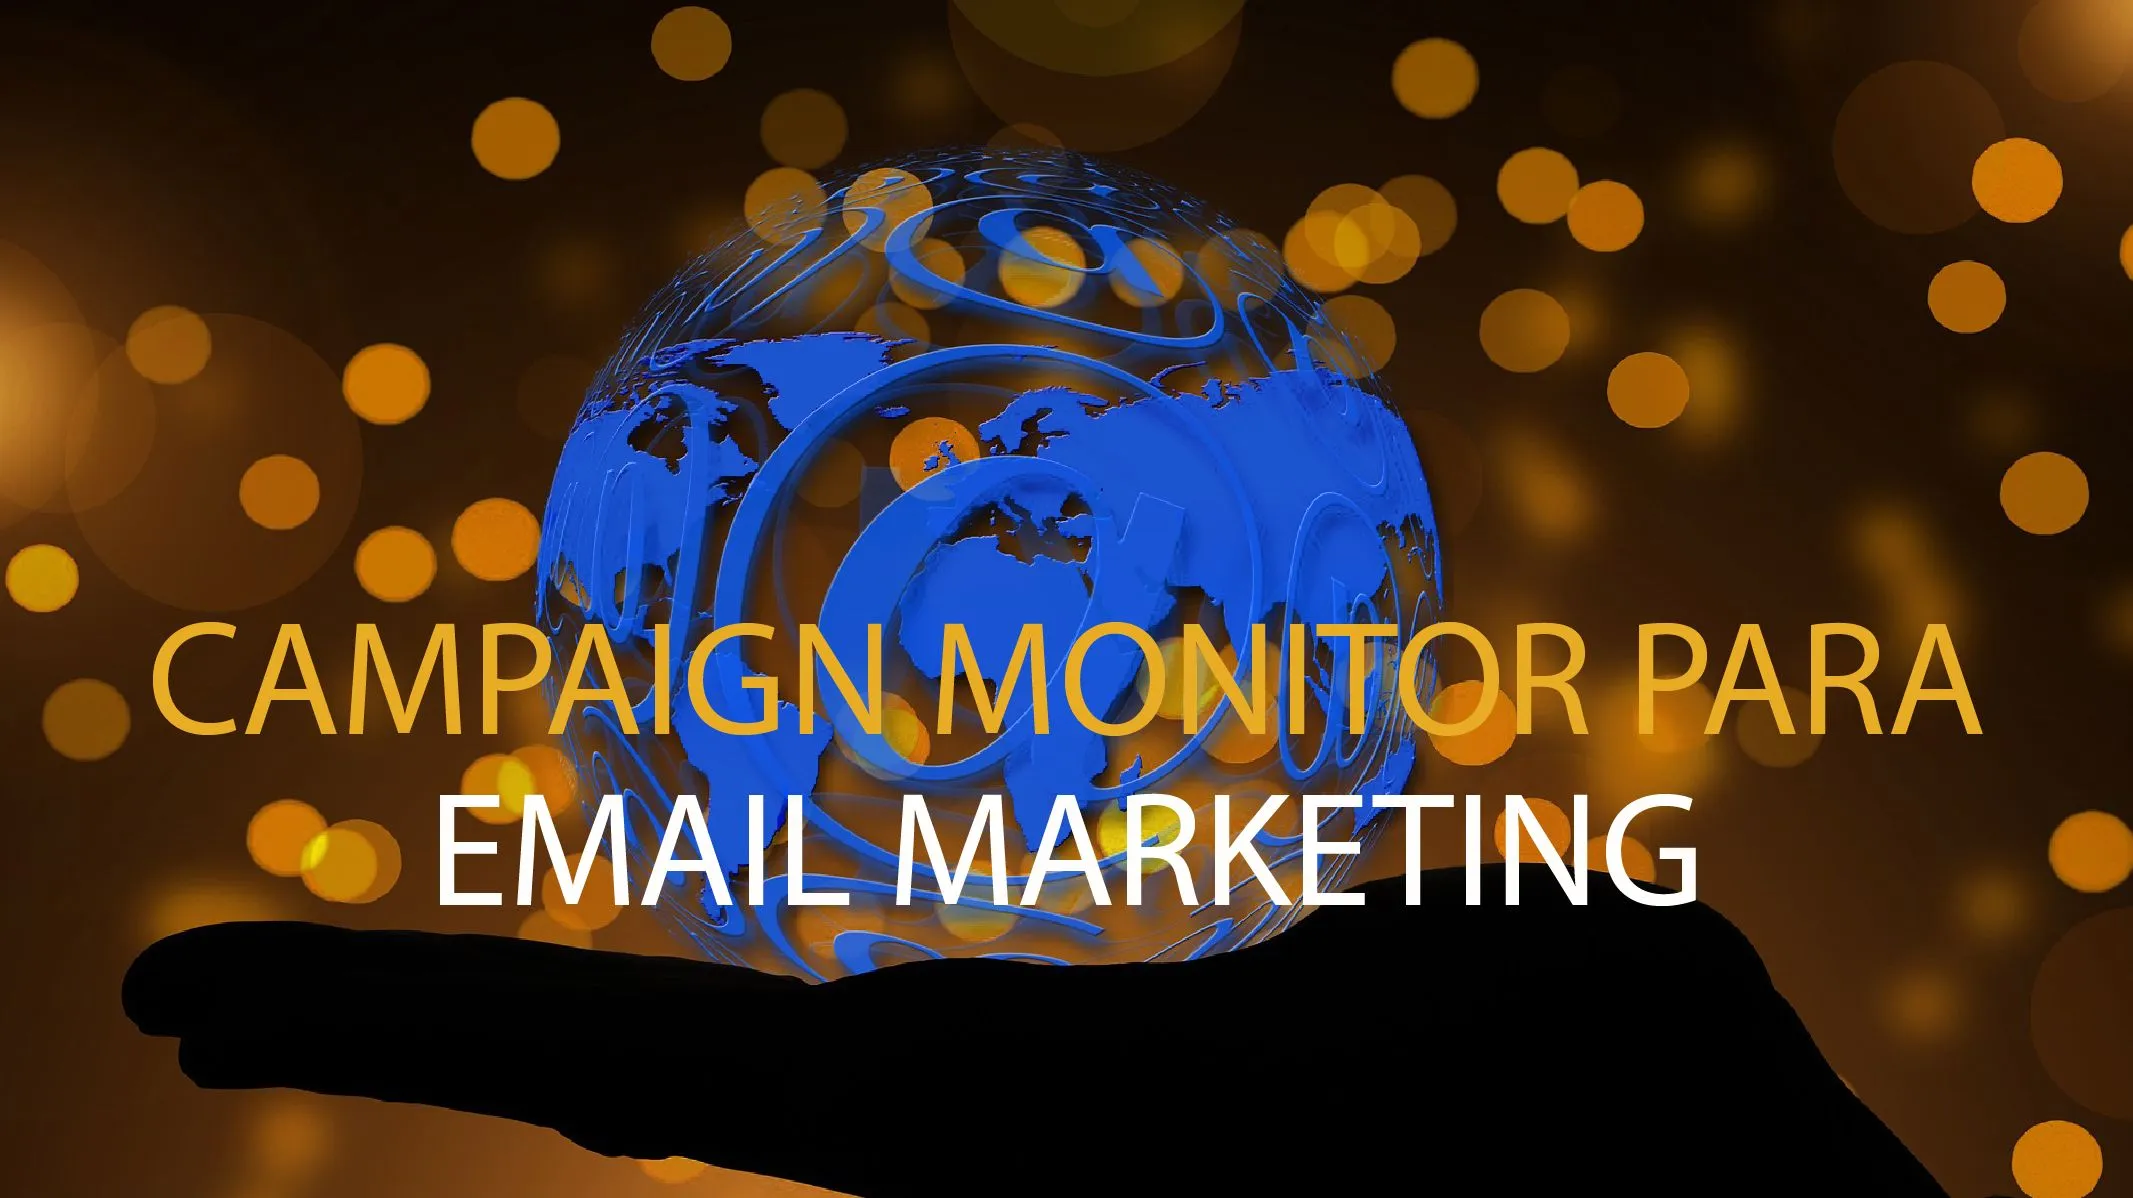 Campaign Monitor para gestionar tus campañas de email marketing